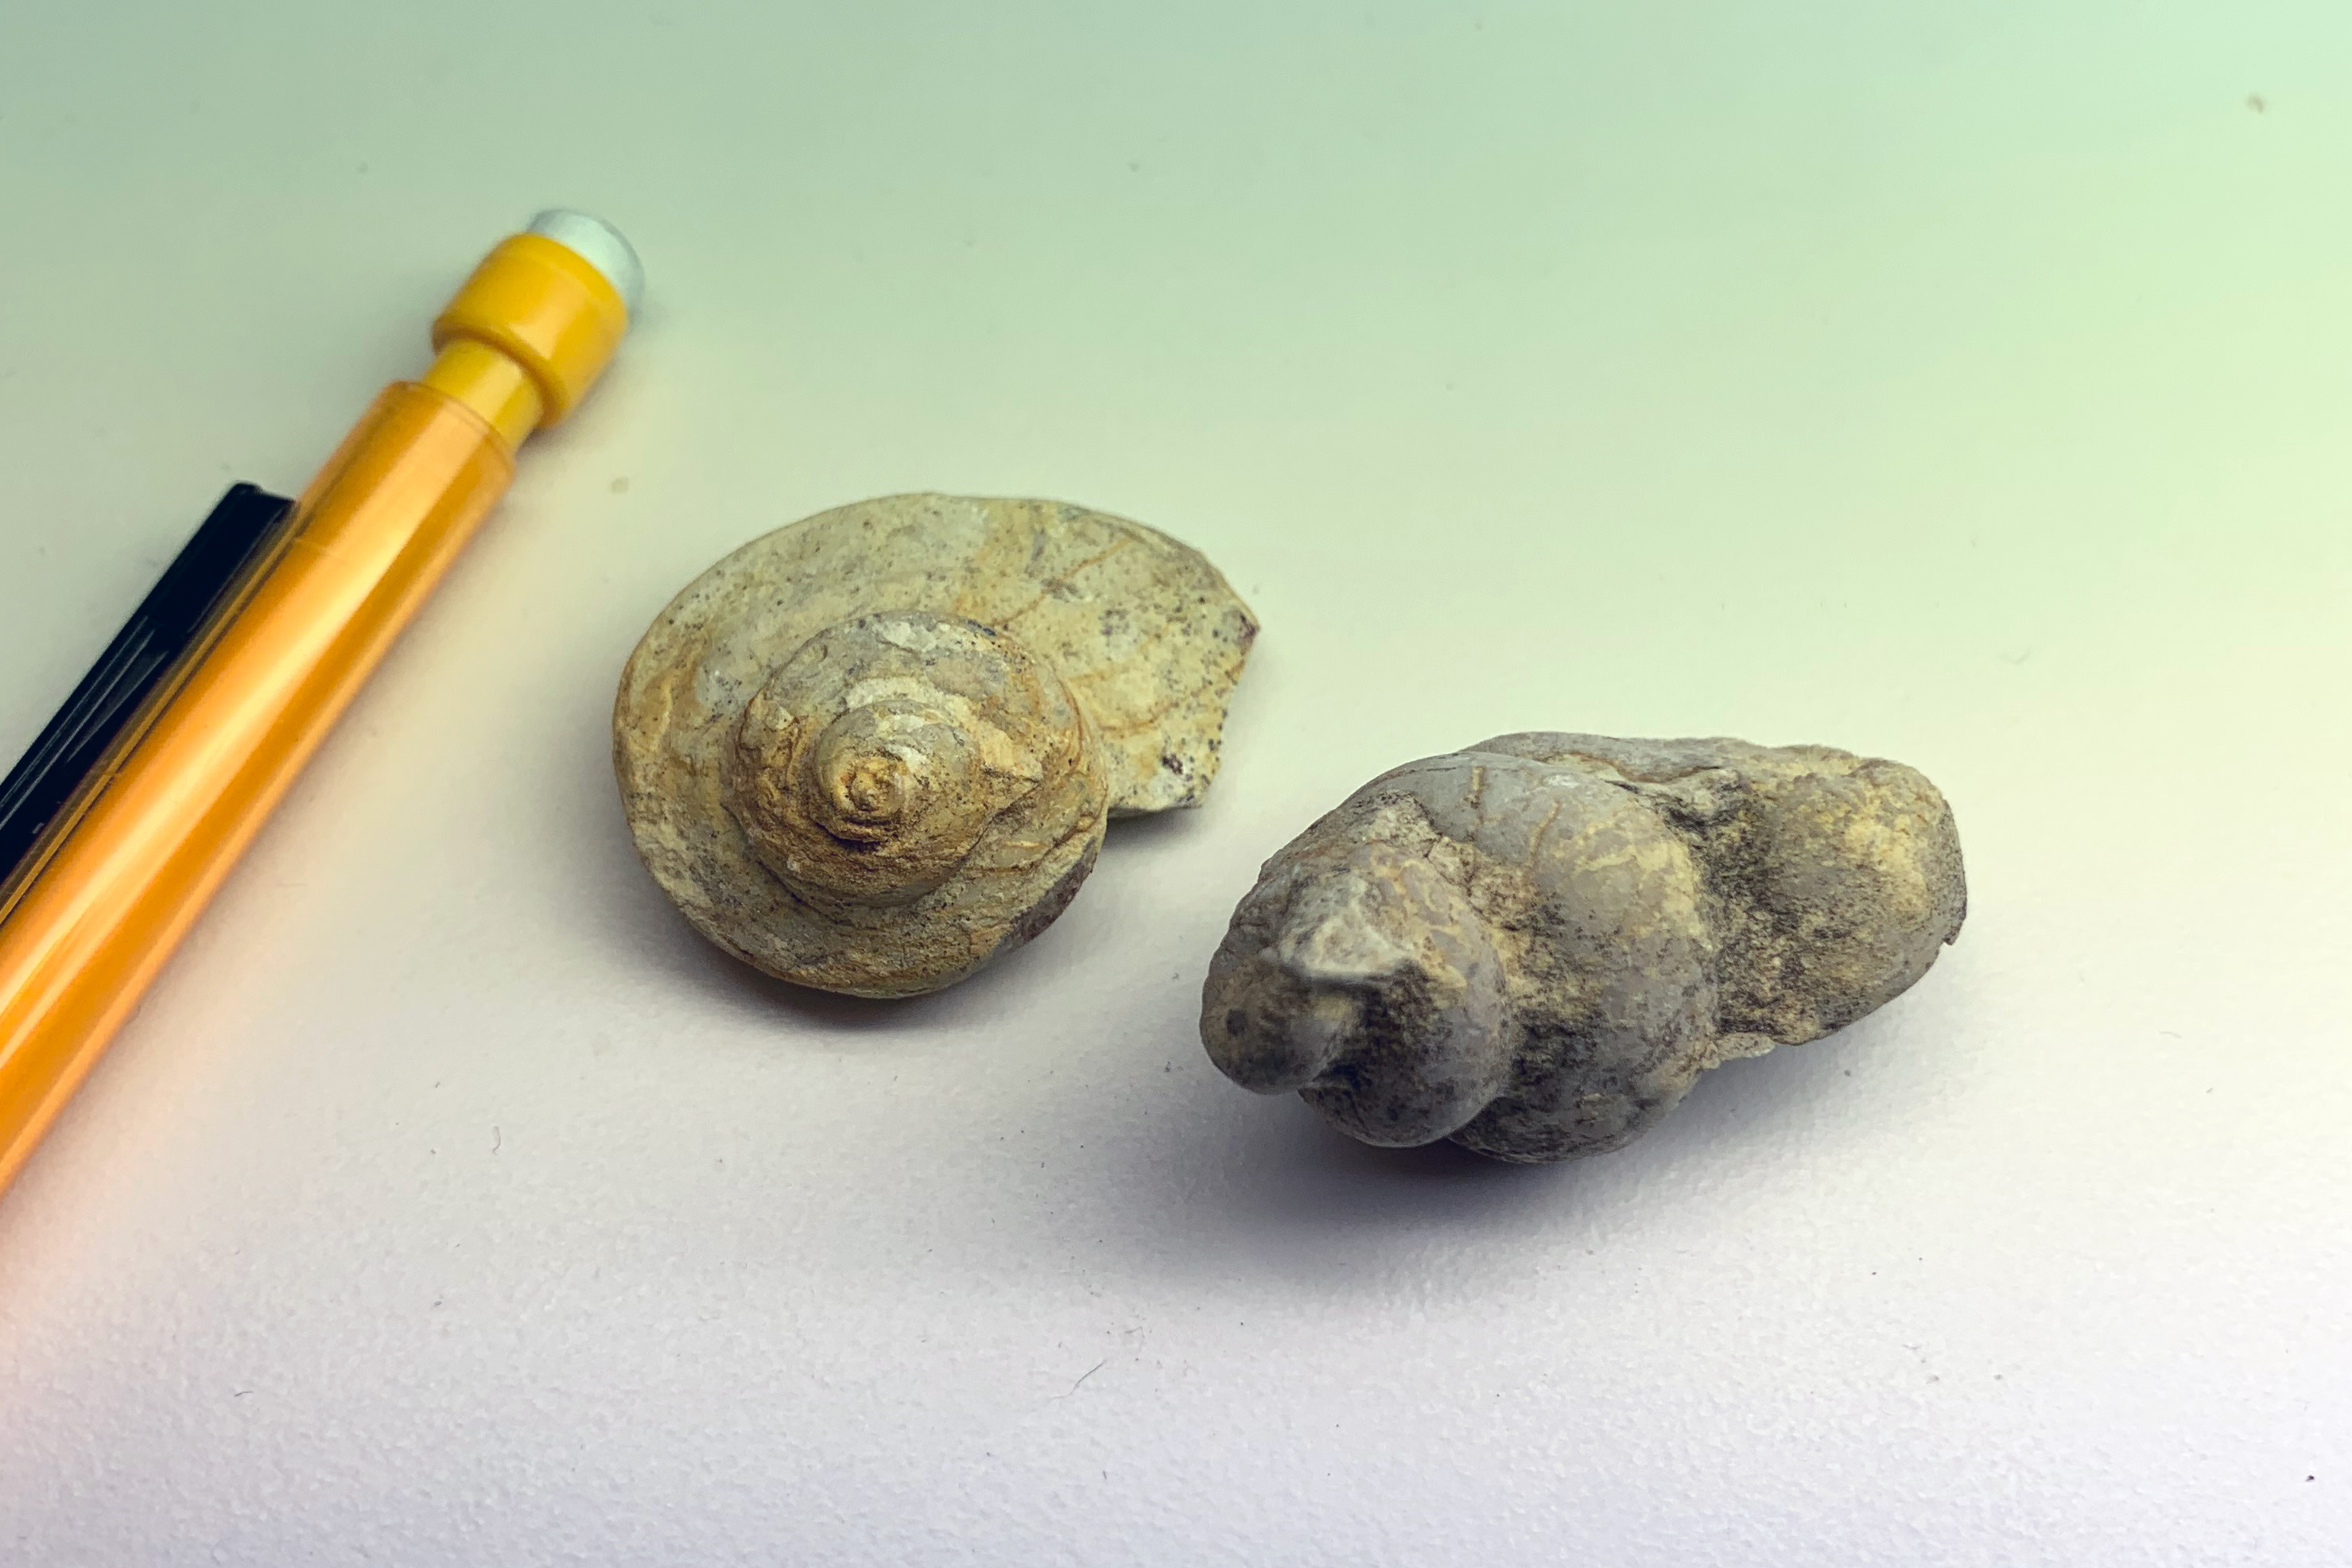 Two fossil gastropod shells from Ordovician bedrock in southeastern Minnesota.